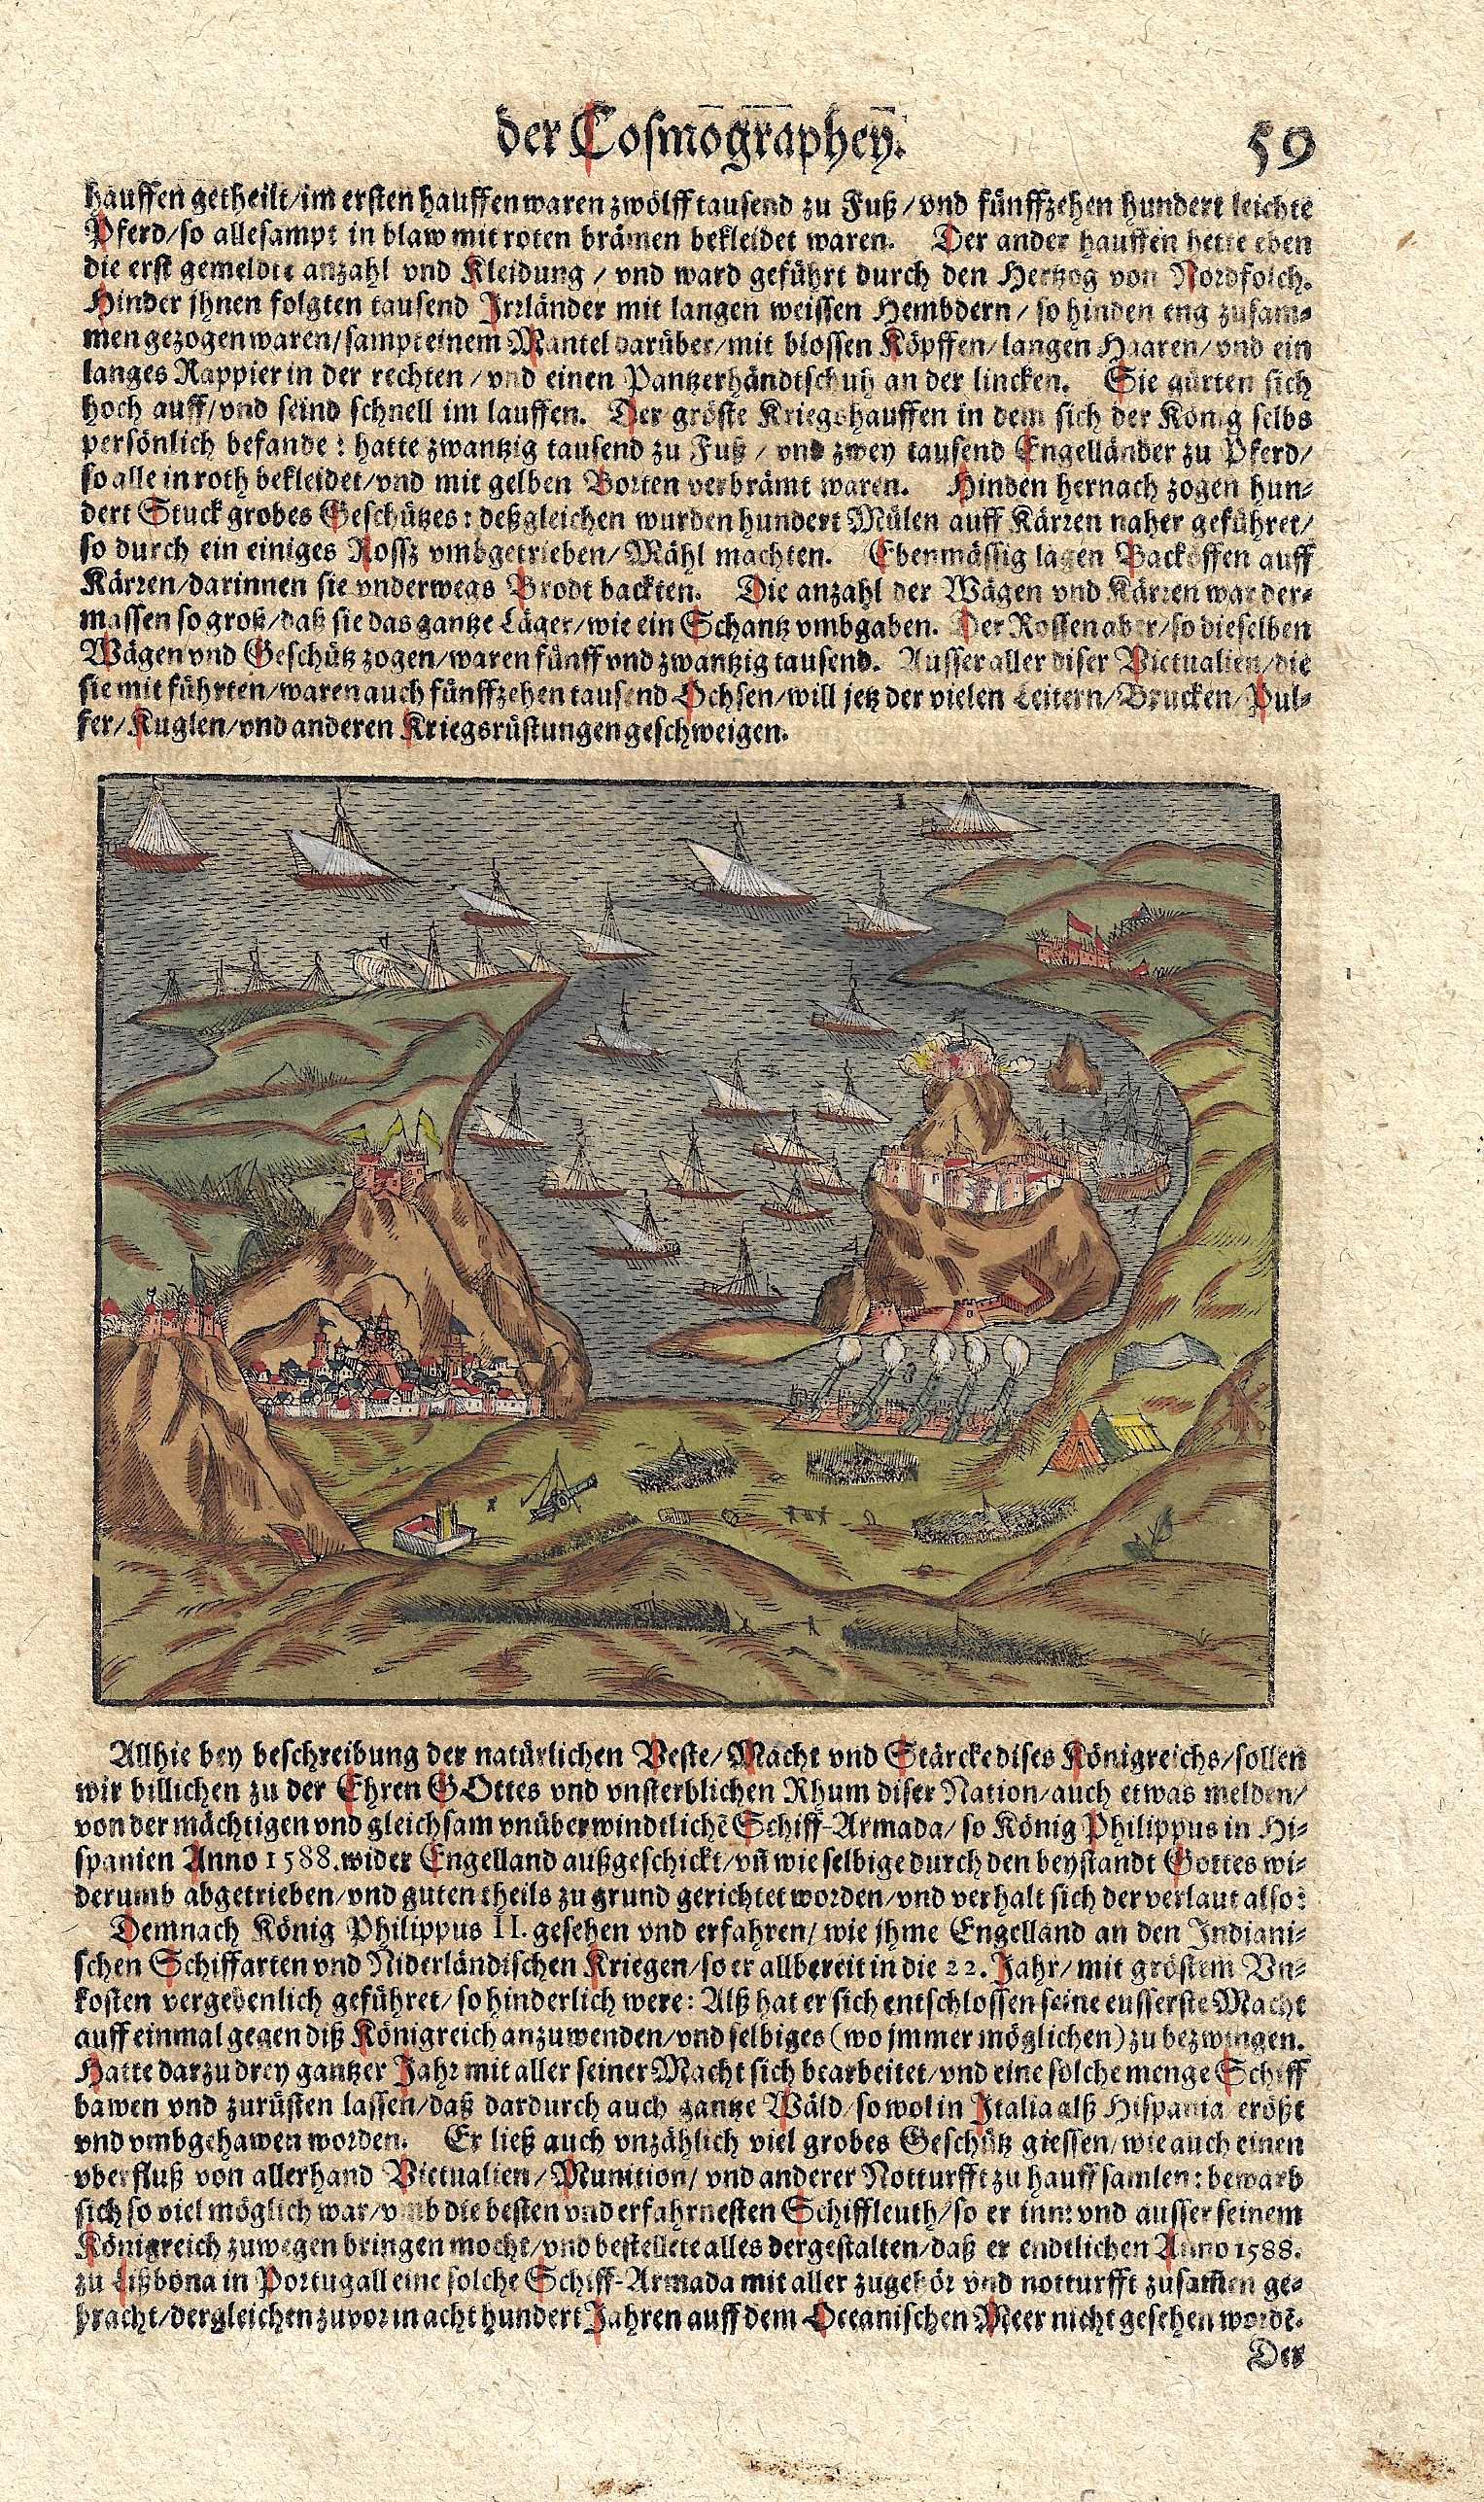 Münster Sebastian Allhie bey beschreibung der natürlichen Macht und Stärke…unüberwindliche Schiff-Armada/so König Philippus II in Hispanien Anno 1588.